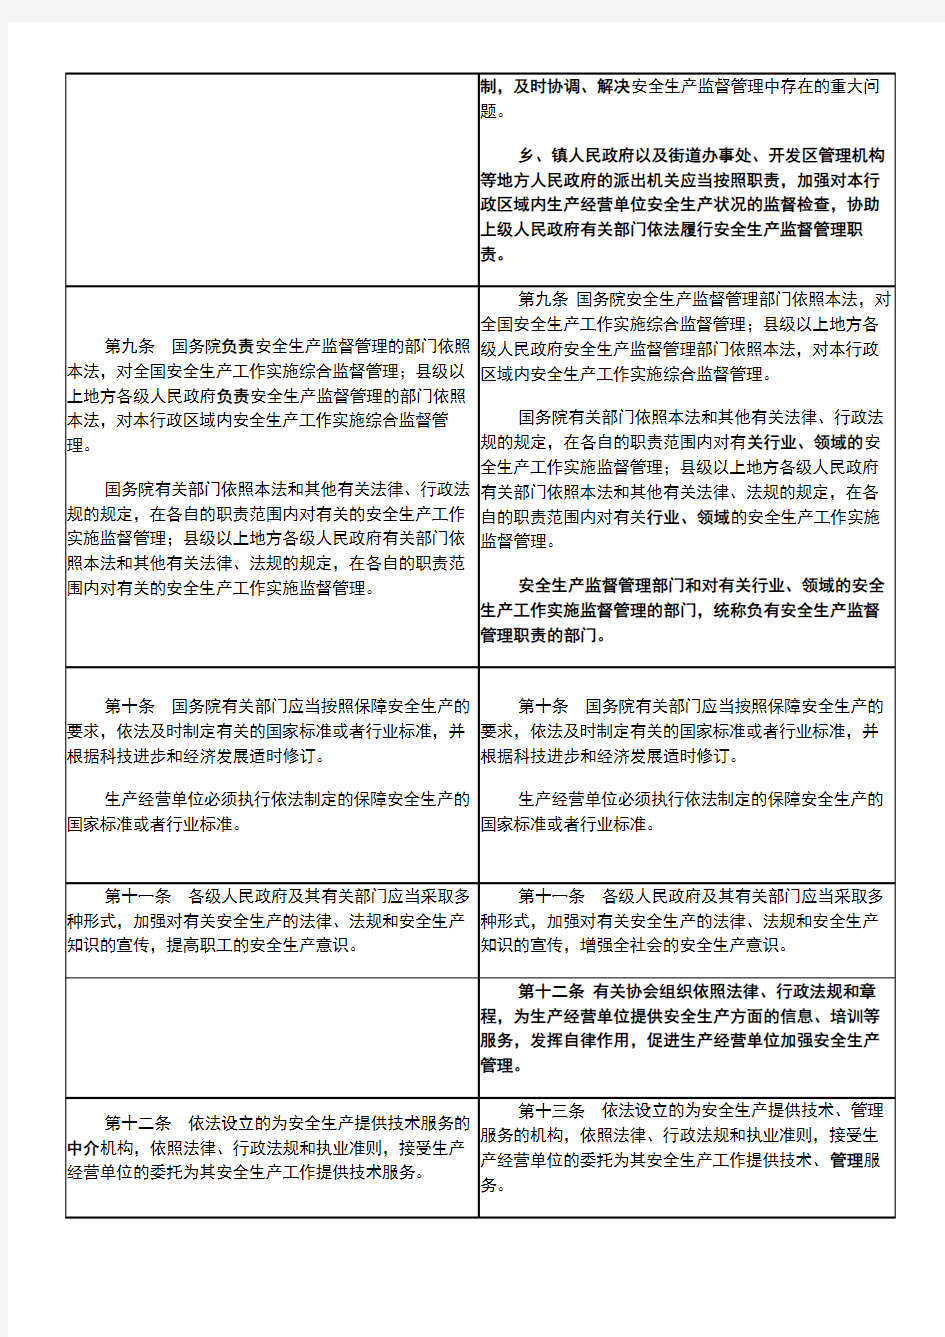 中华人民共和国安全生产法2002版与2014版新旧对比